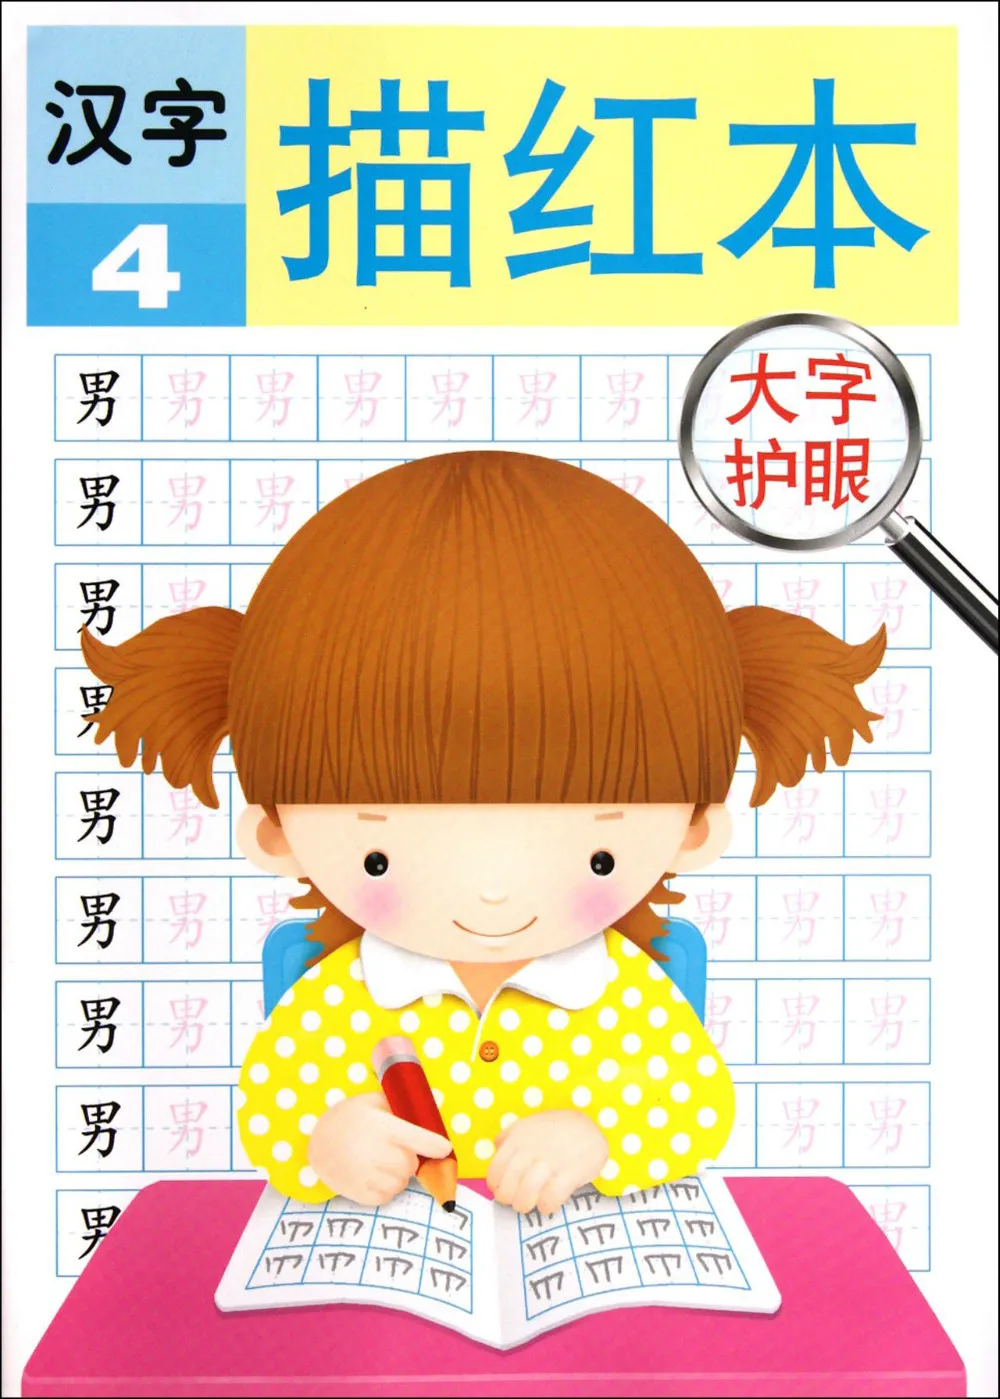 Упражнения с большими персонажами, китайская книга для детей от 1 года до 4 лет, Miaohong от 3 до 6 лет,, книги для детей